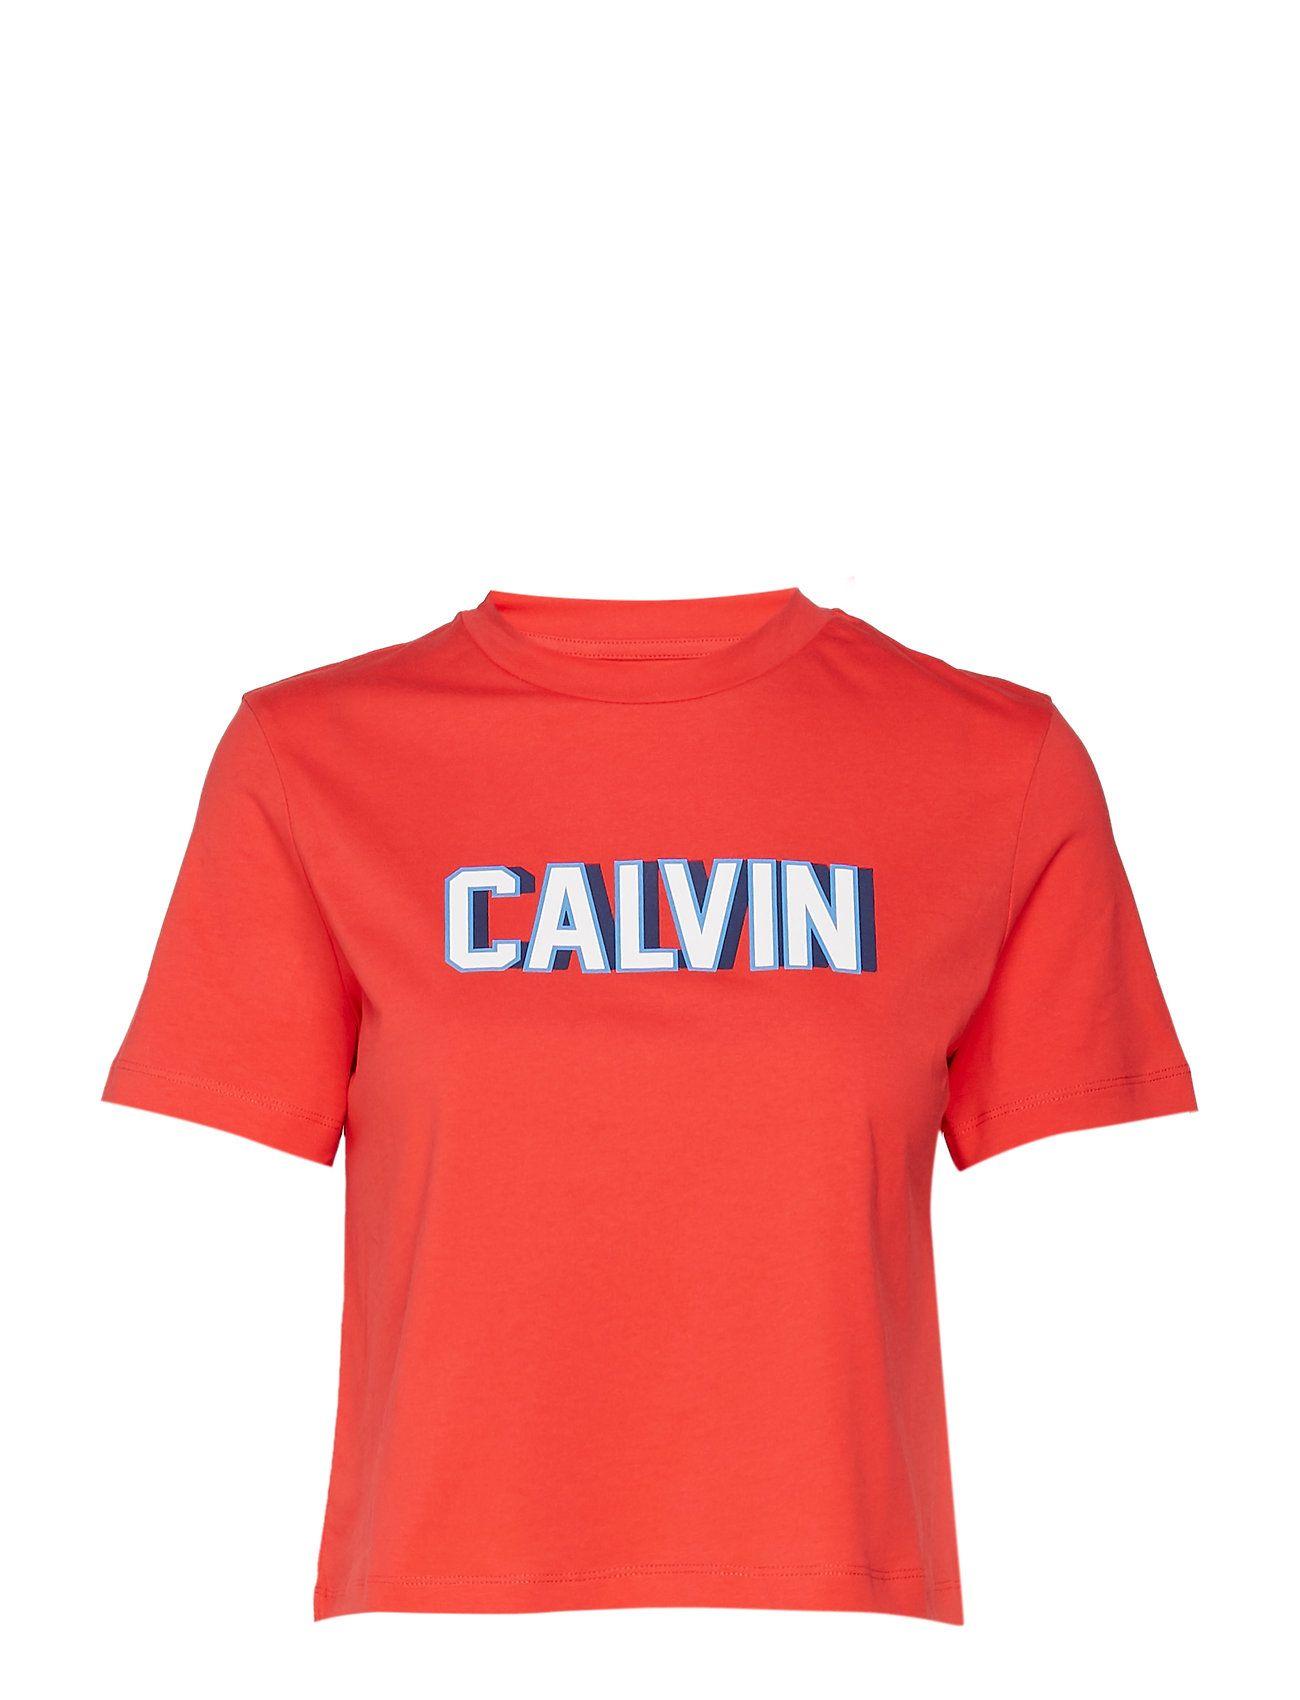 Calvin Logo - Calvin Klein Jeans København Online Største Udvalg. Nye